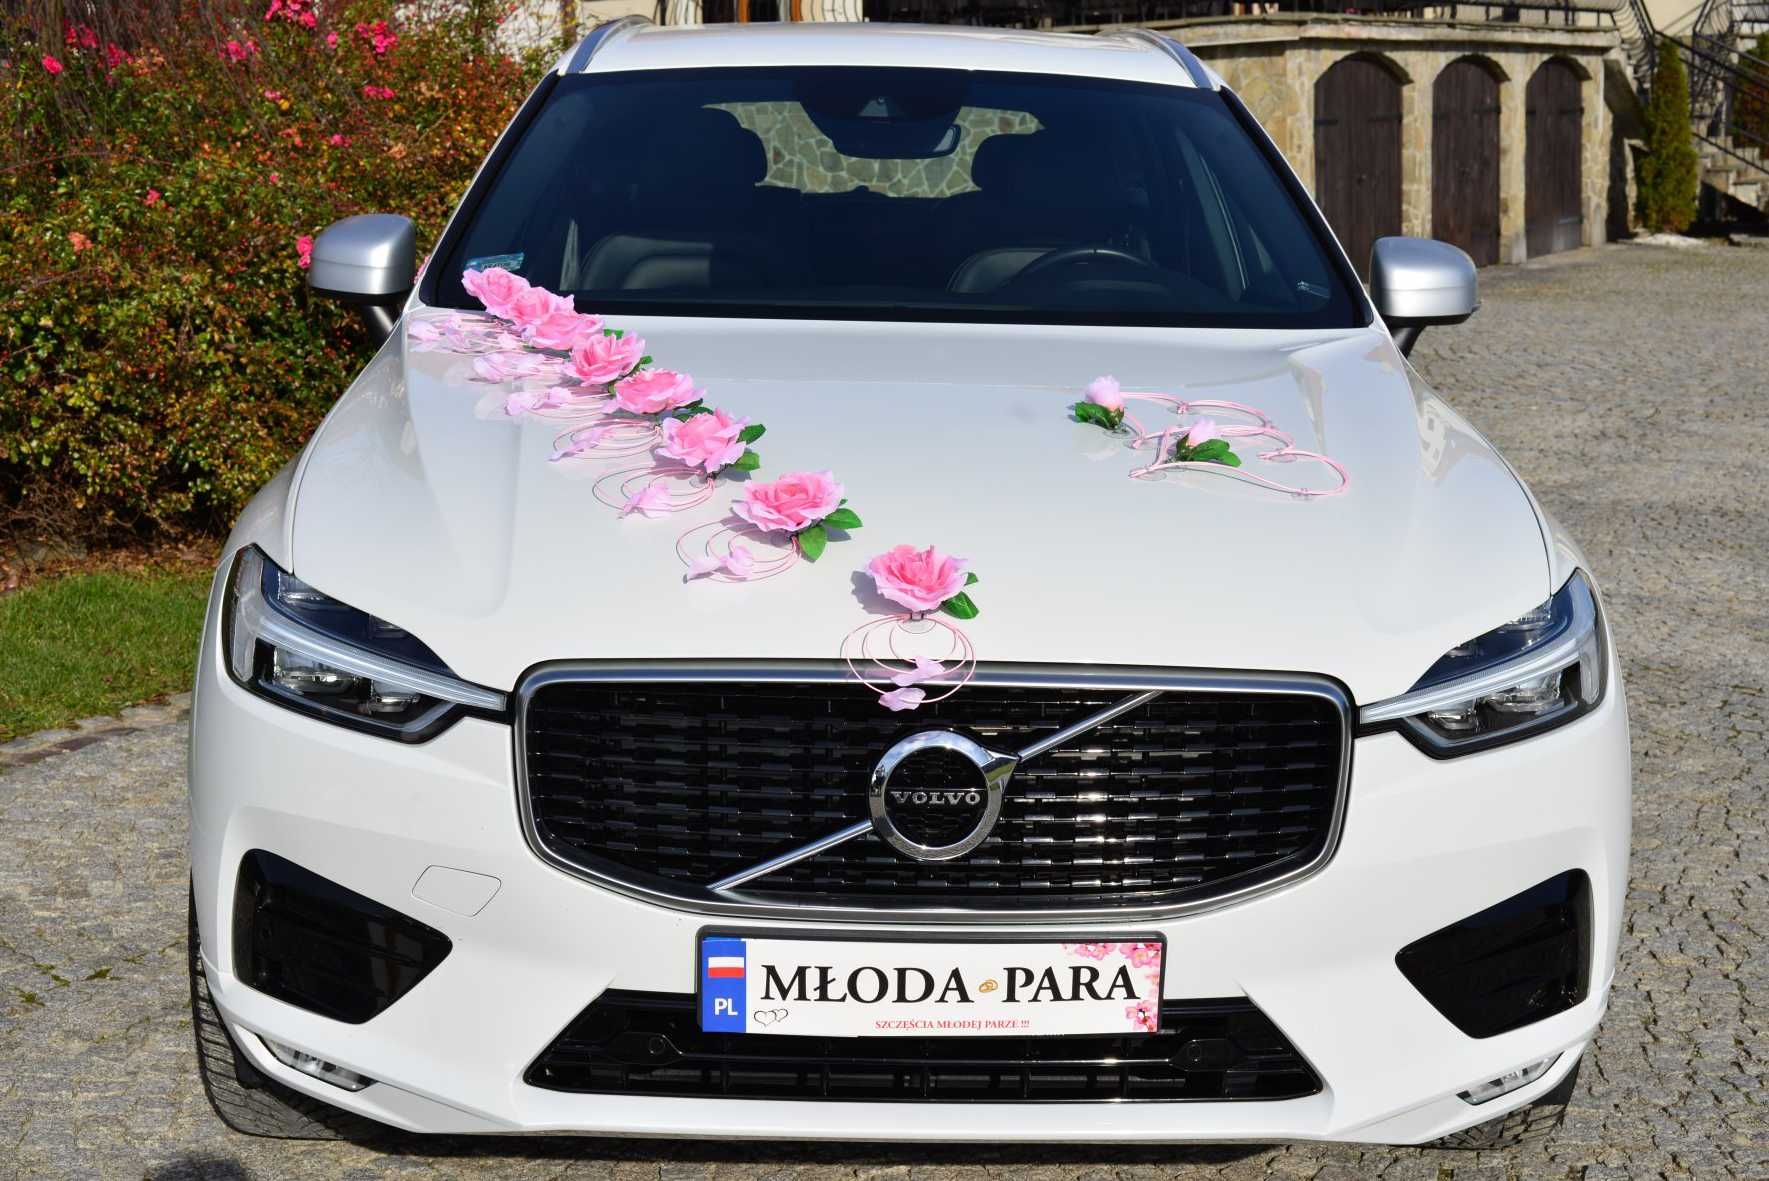 Ozdoba dekoracja na samochód weselny ślub przybranie auto 341